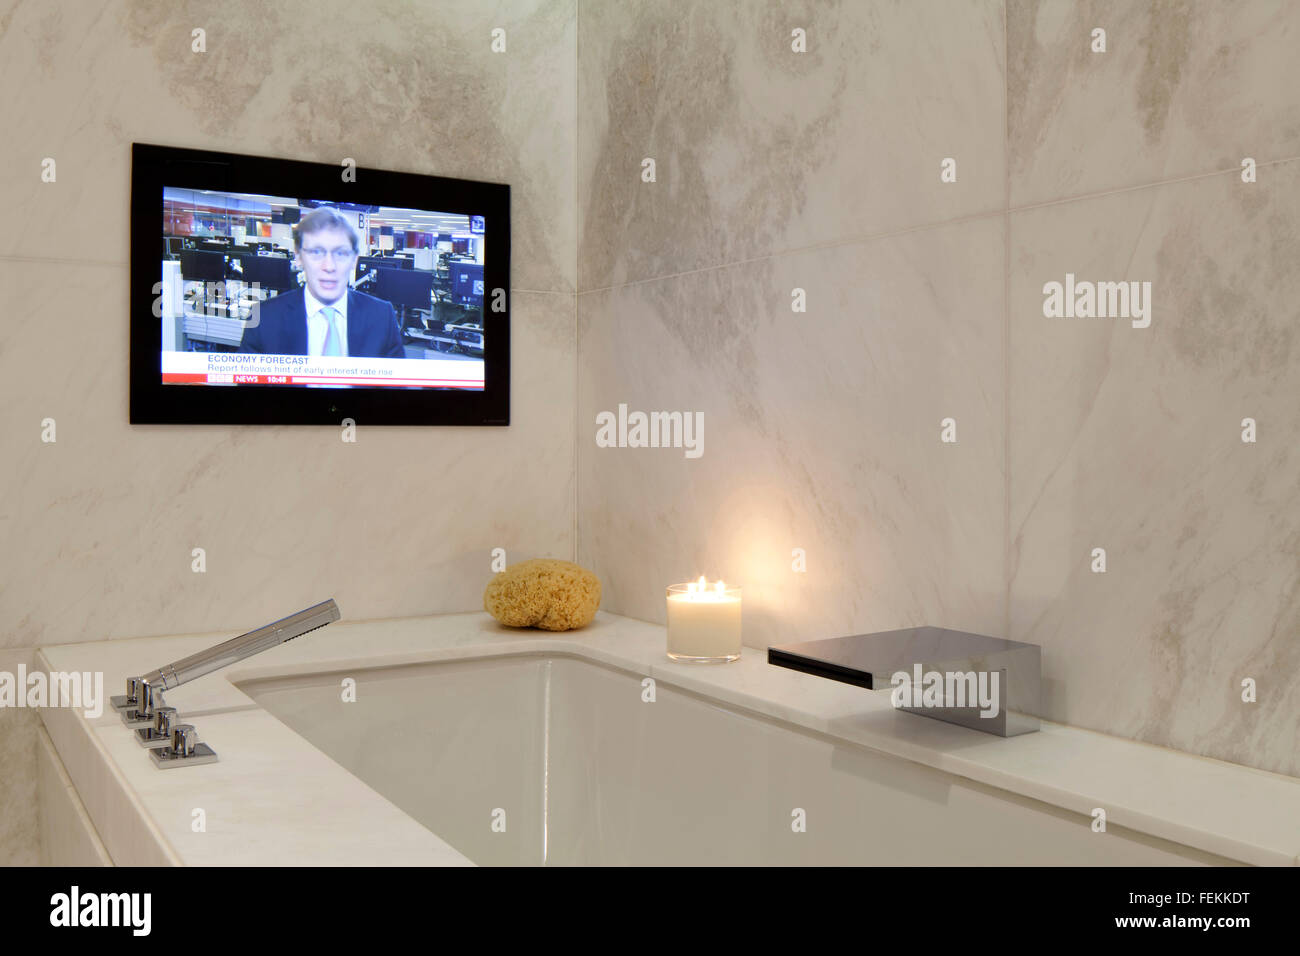 Tv in bathroom immagini e fotografie stock ad alta risoluzione - Alamy